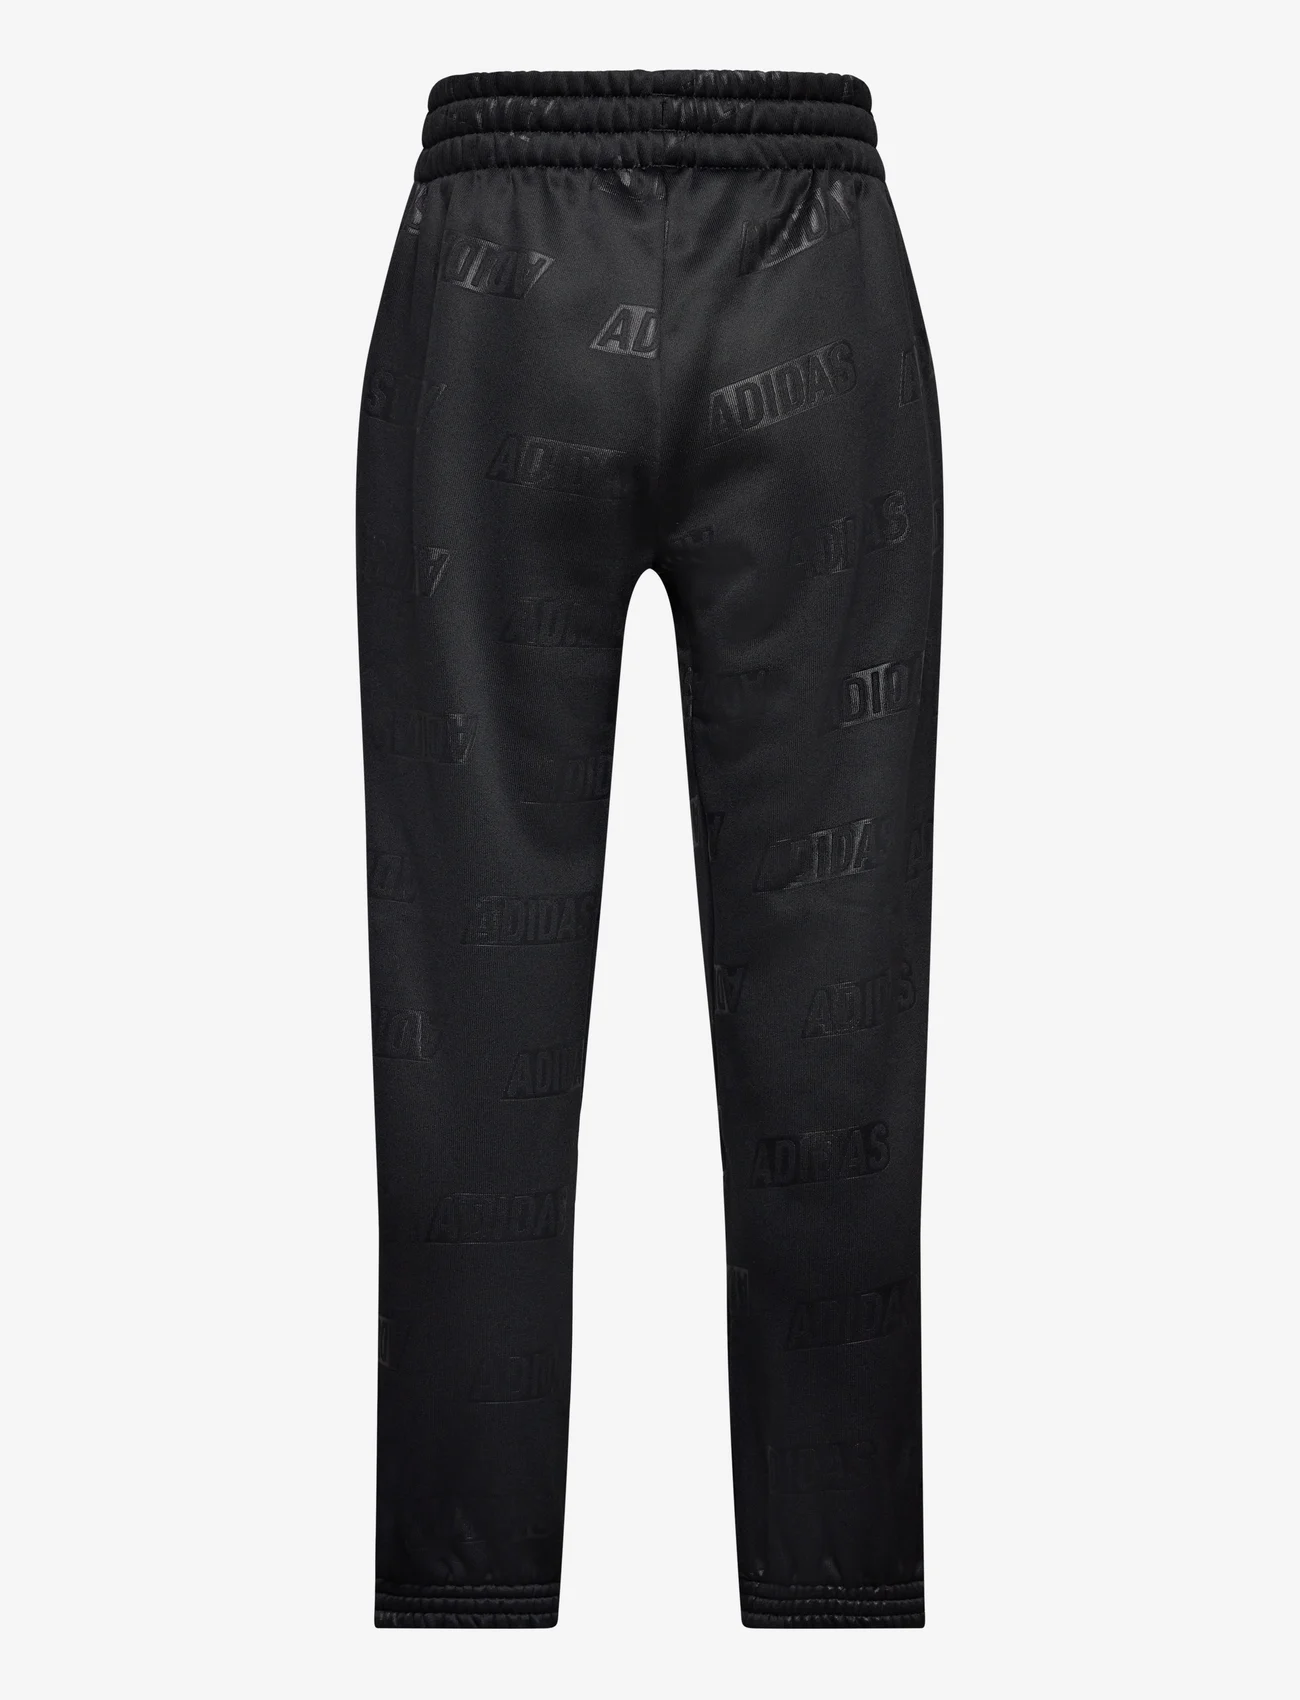 adidas Sportswear - JB BLQ4 PANT - sweatpants - black/goldmt - 1